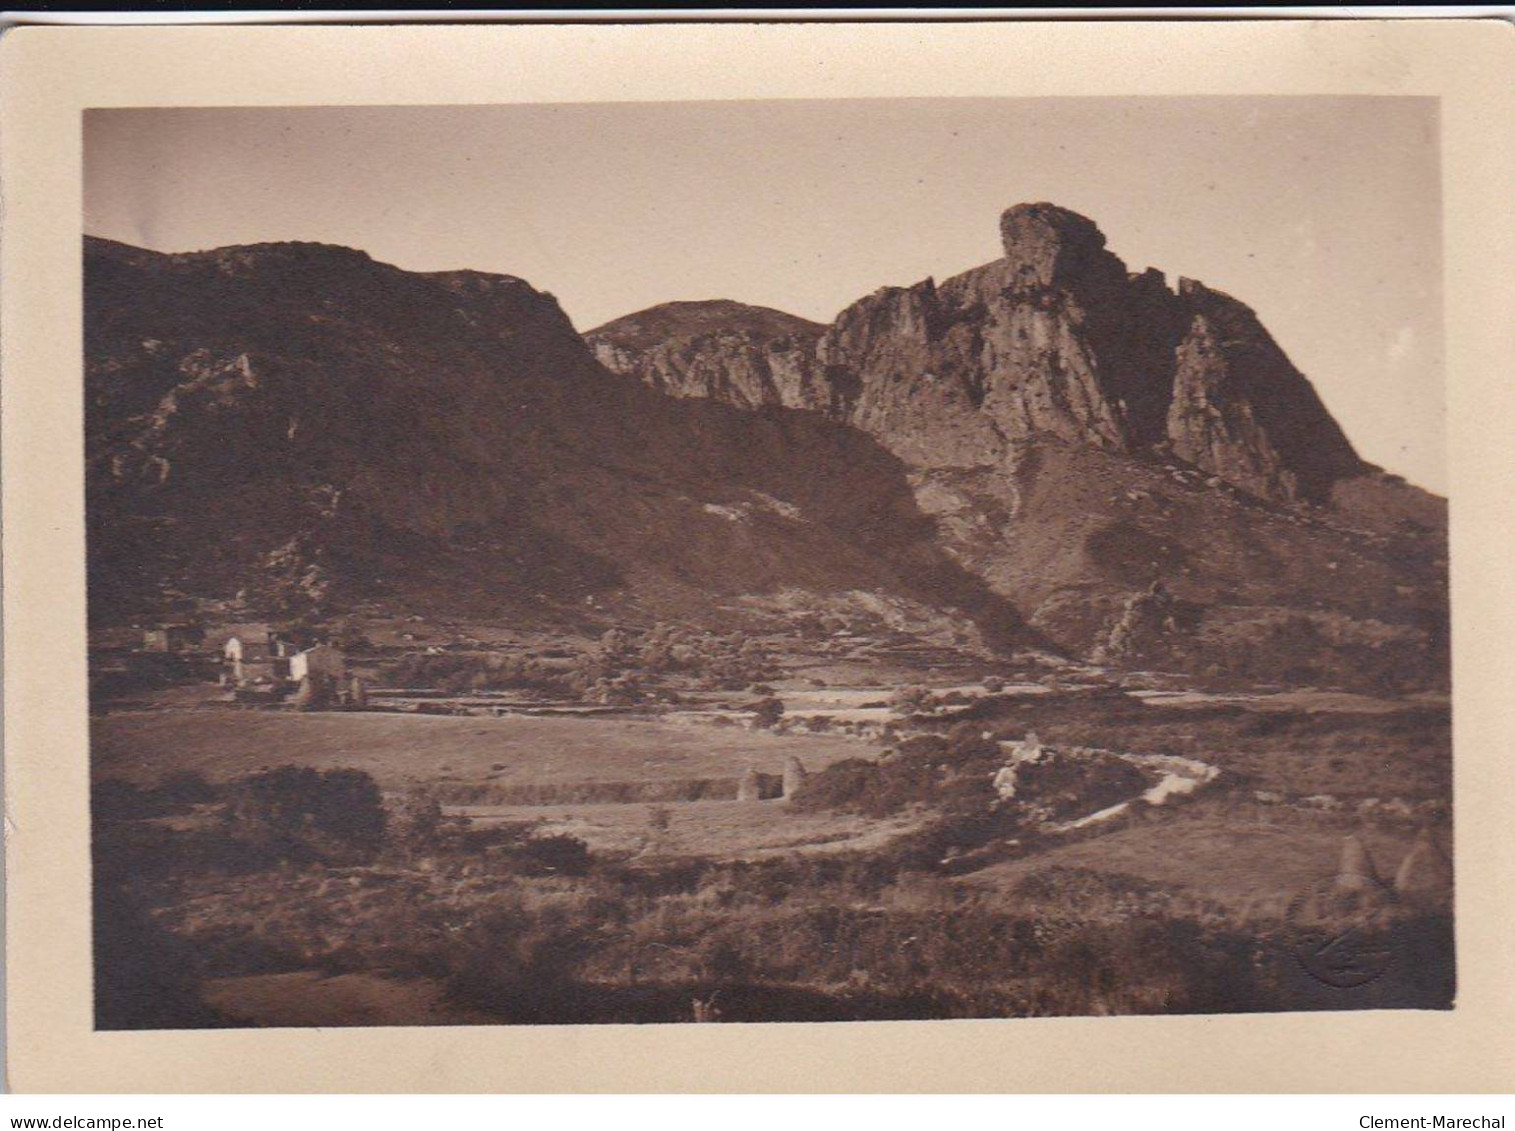 CORSE : Lot de 12 photos, environ 18x13cm, années 1920-30  (photo TOMASI) - très bon état